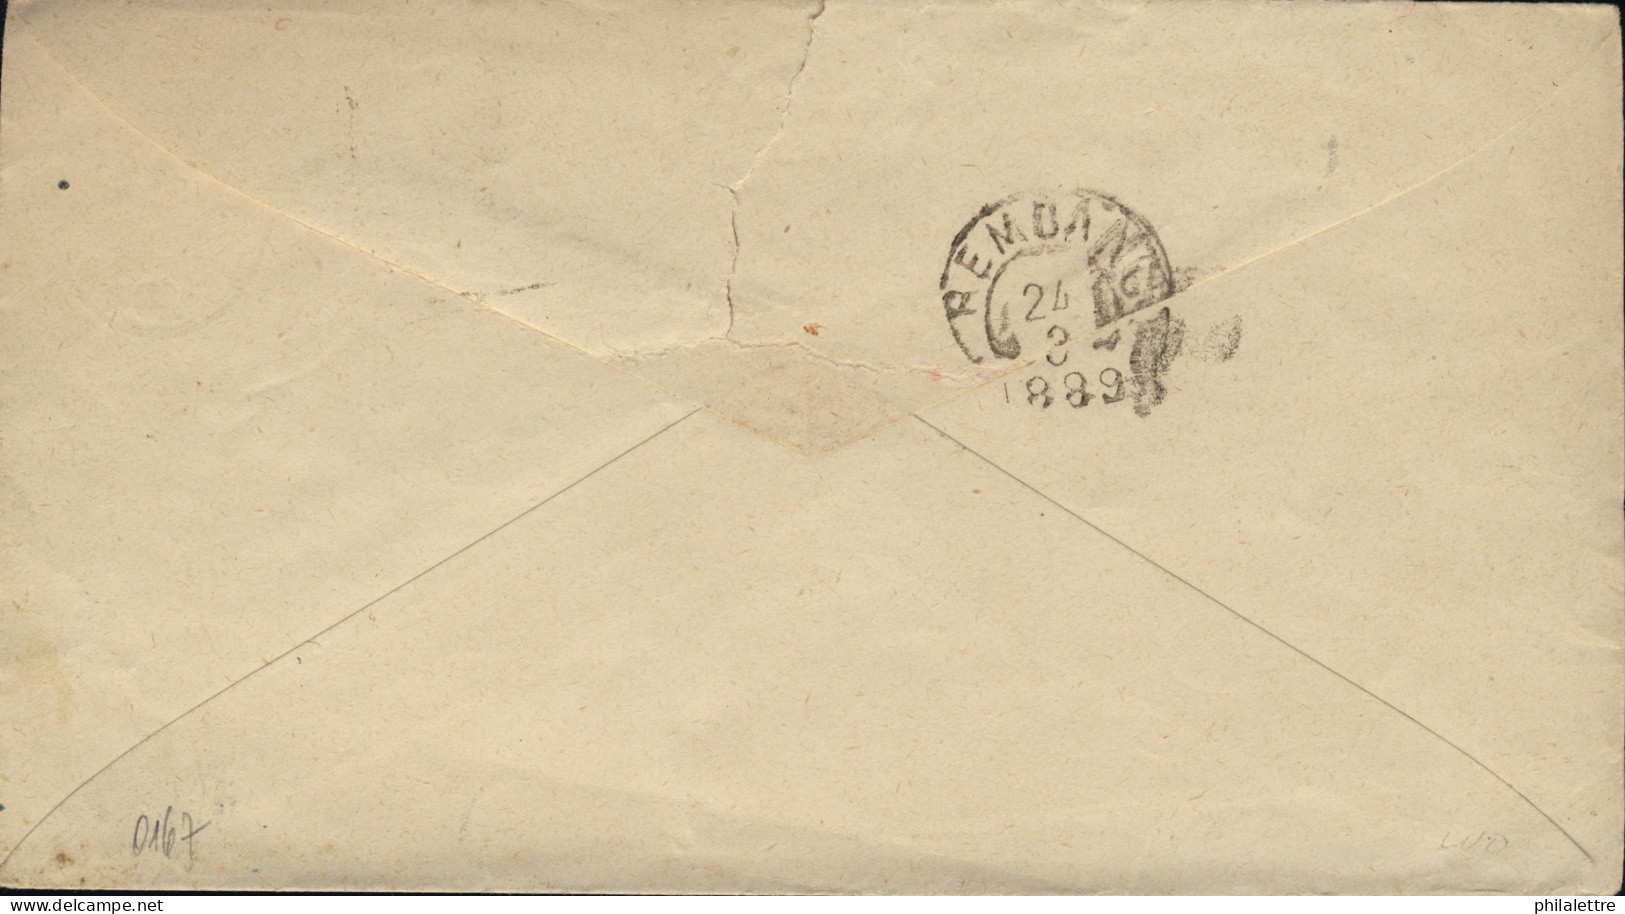 NED. INDIE / DUTCH INDIES / INDES NÉERLANDAISES - 1889 10c Postal Envelope Used From SEMARANG To REMBANG - Indes Néerlandaises